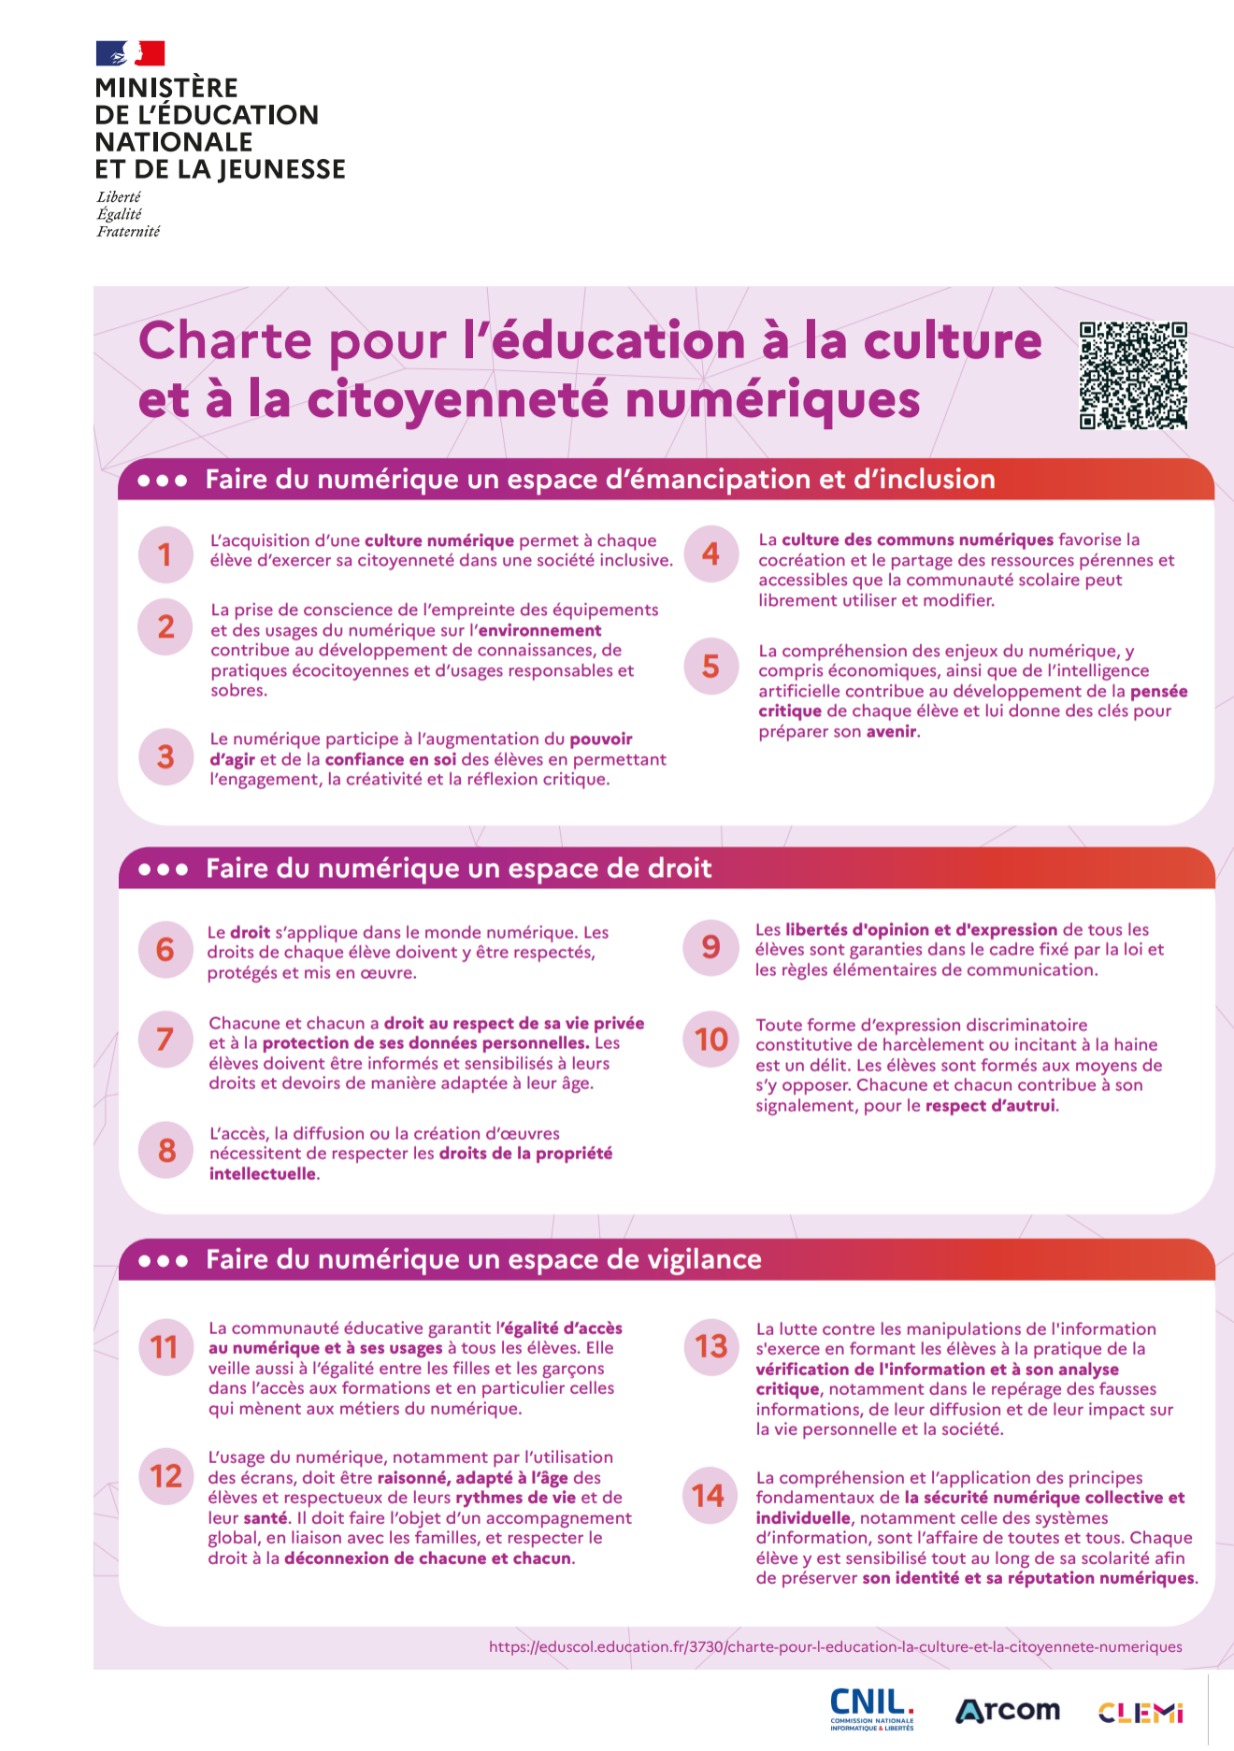 Charte pour l'éducation à la culture et à la citoyenneté